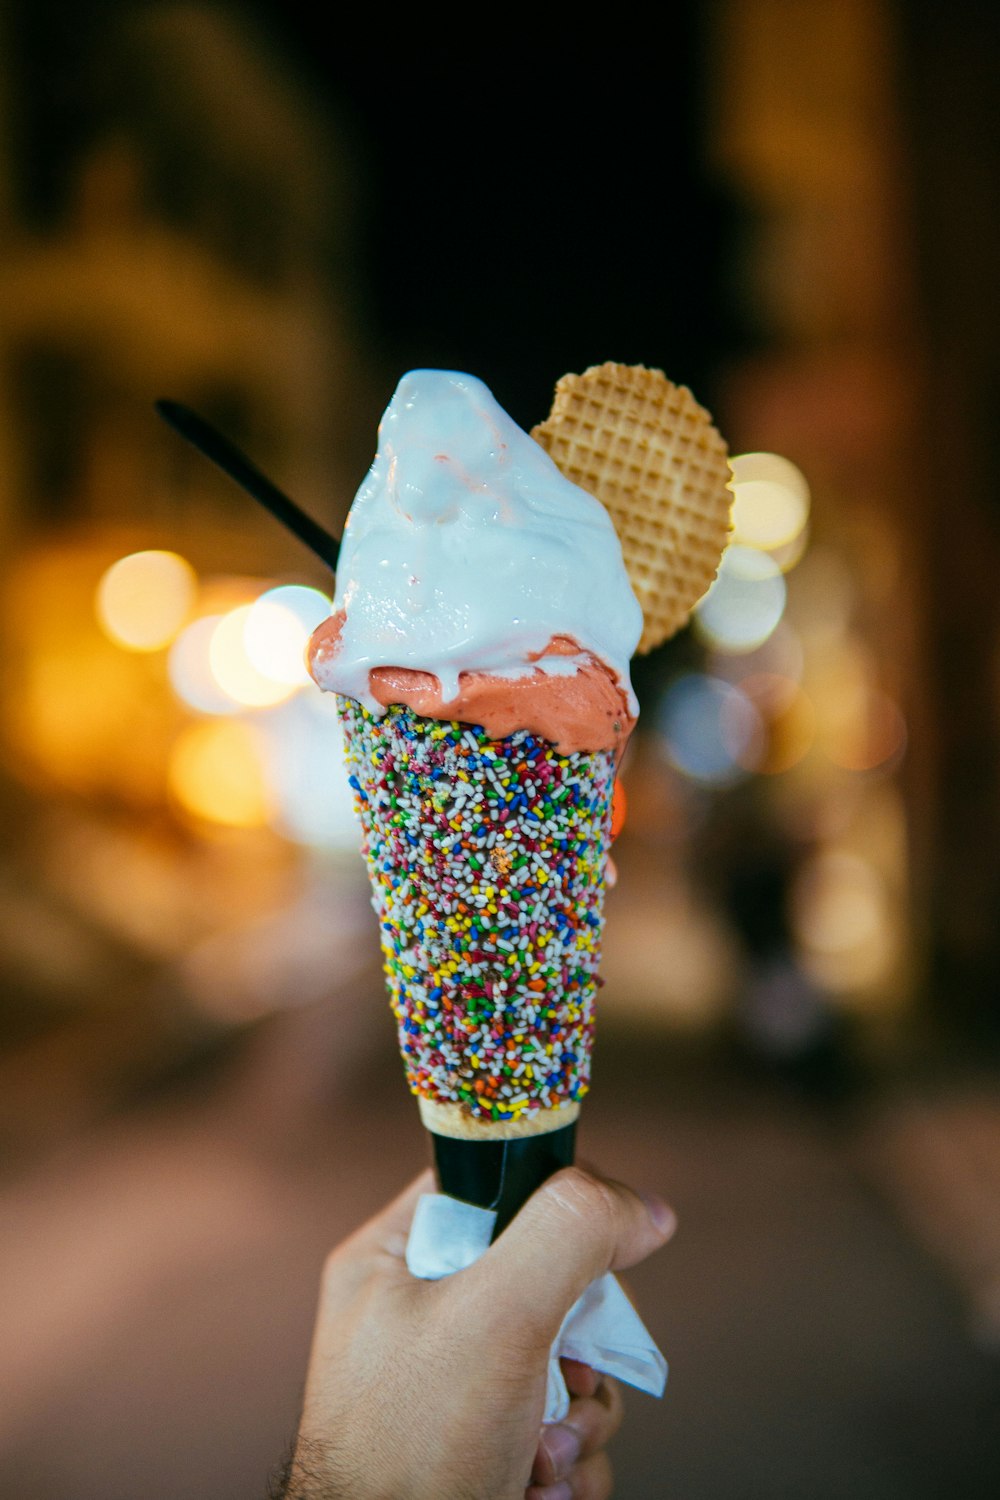 persona sosteniendo un cono de helado espolvoreado multicolor con helado con sabor a vainilla